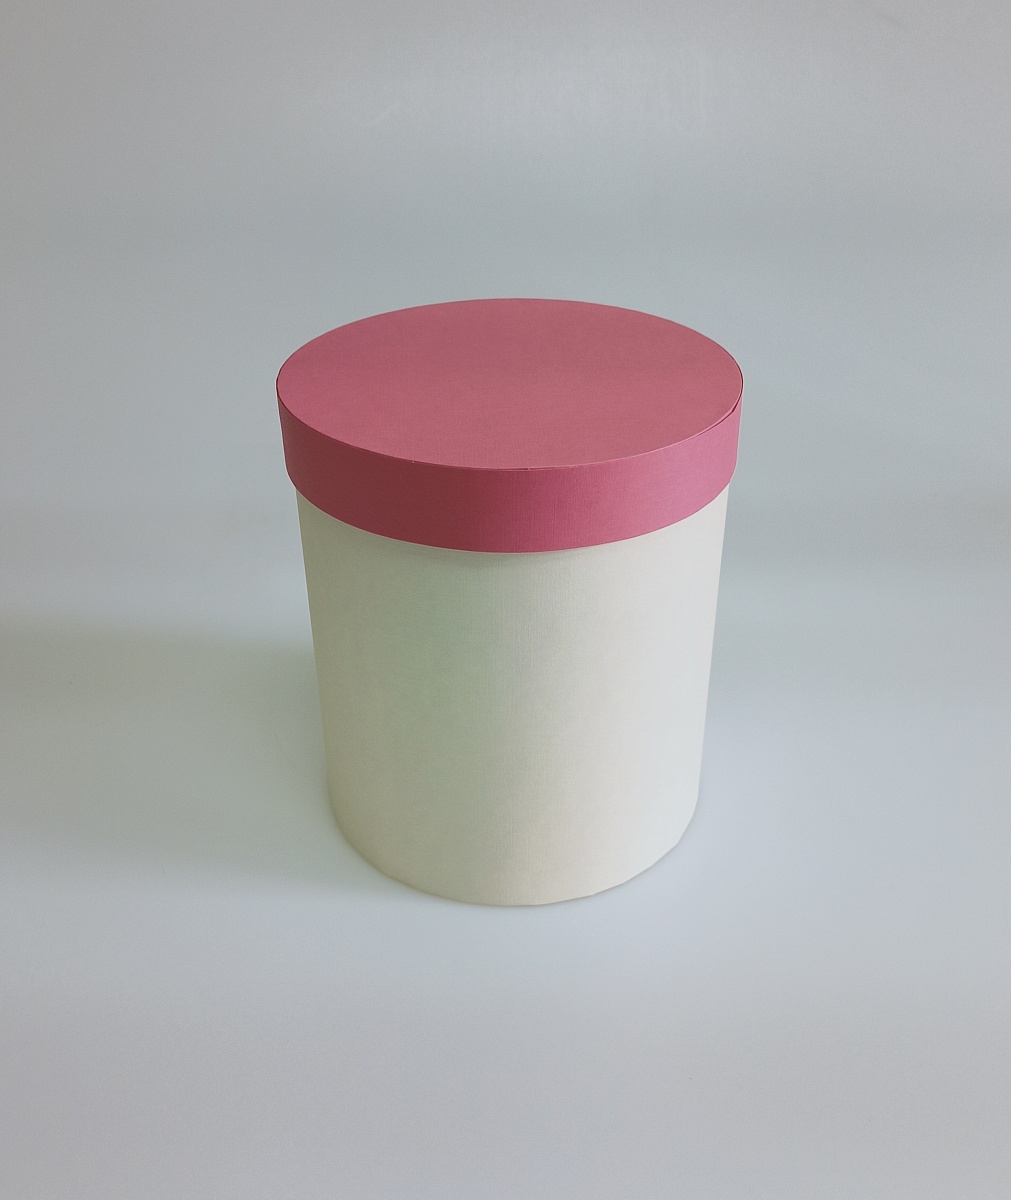 Набор круглых подарочных коробок 3 в 1, 14 х 18 - 18 х 20 см. "Радуга", розовый, бежевый